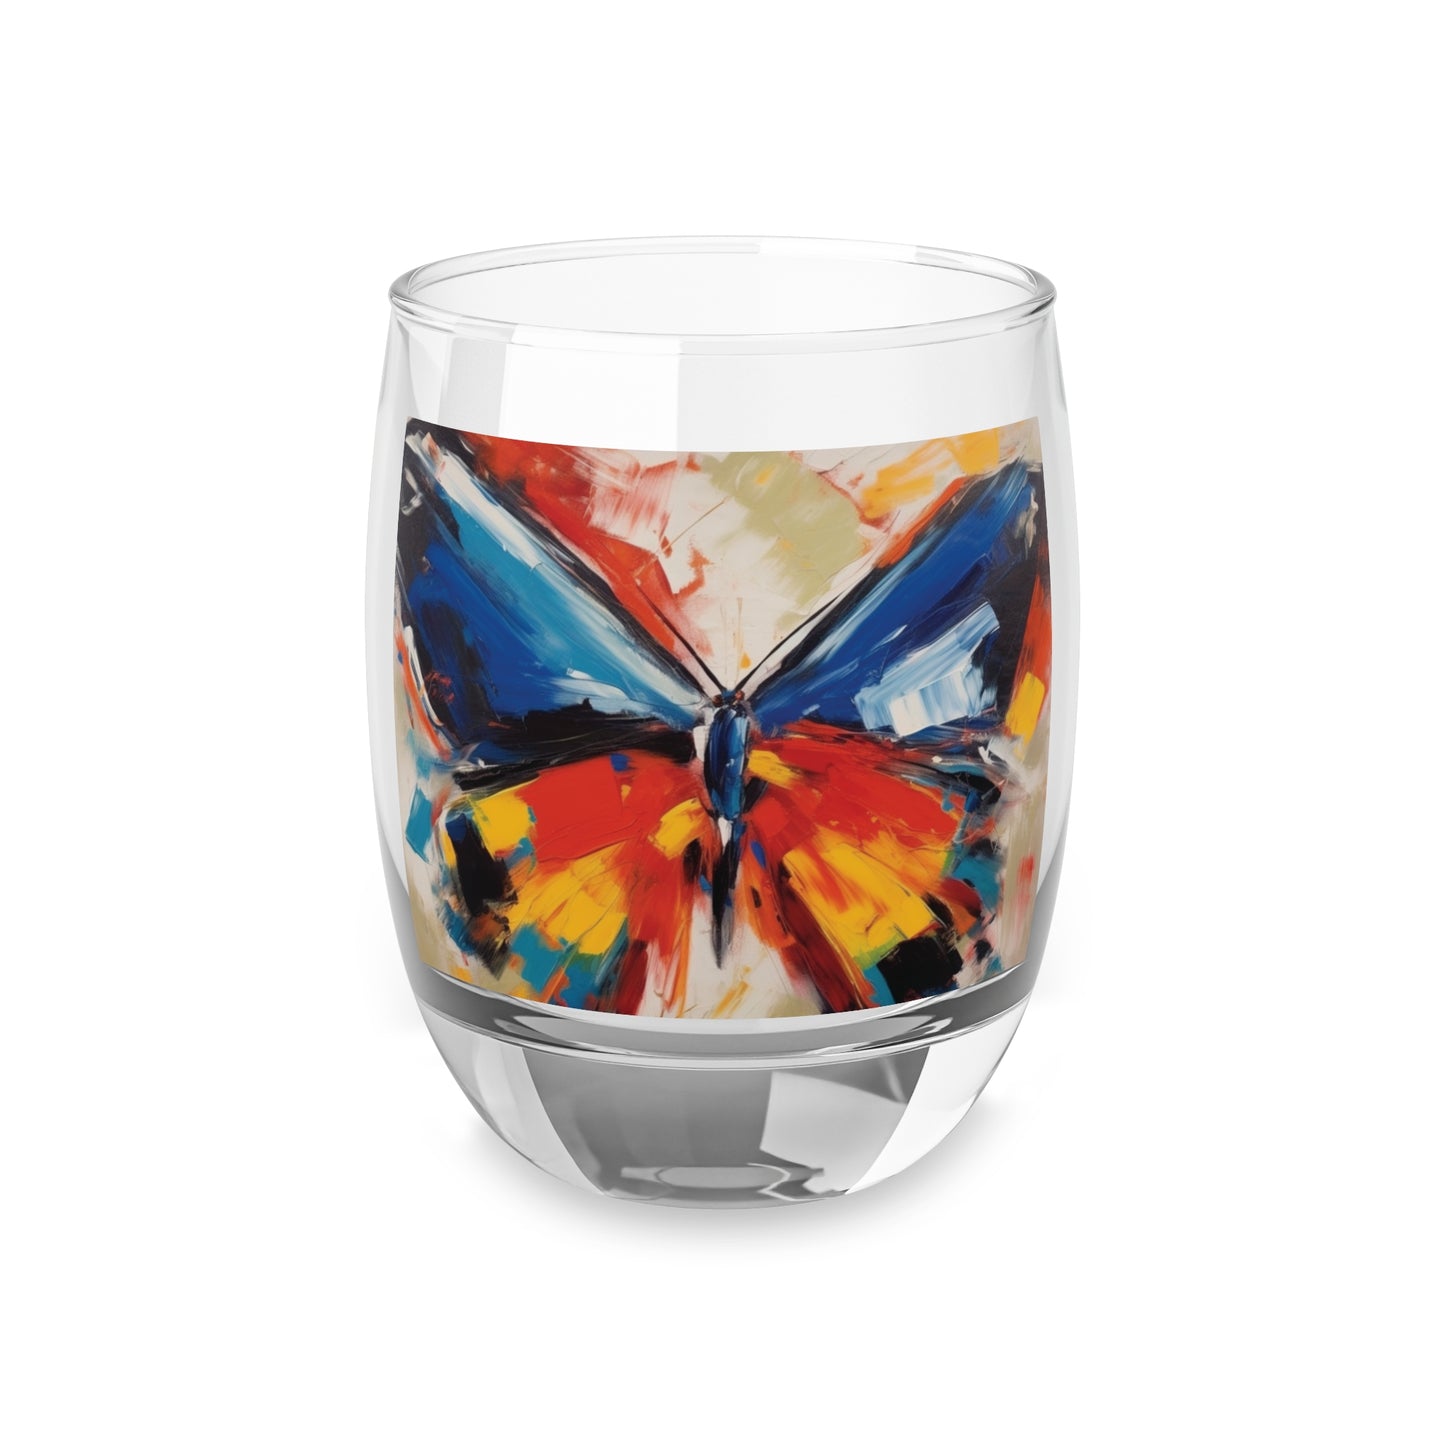 Brush Strokes of Butterfly Splendor: Whiskey Glass for Artistic Inspiration